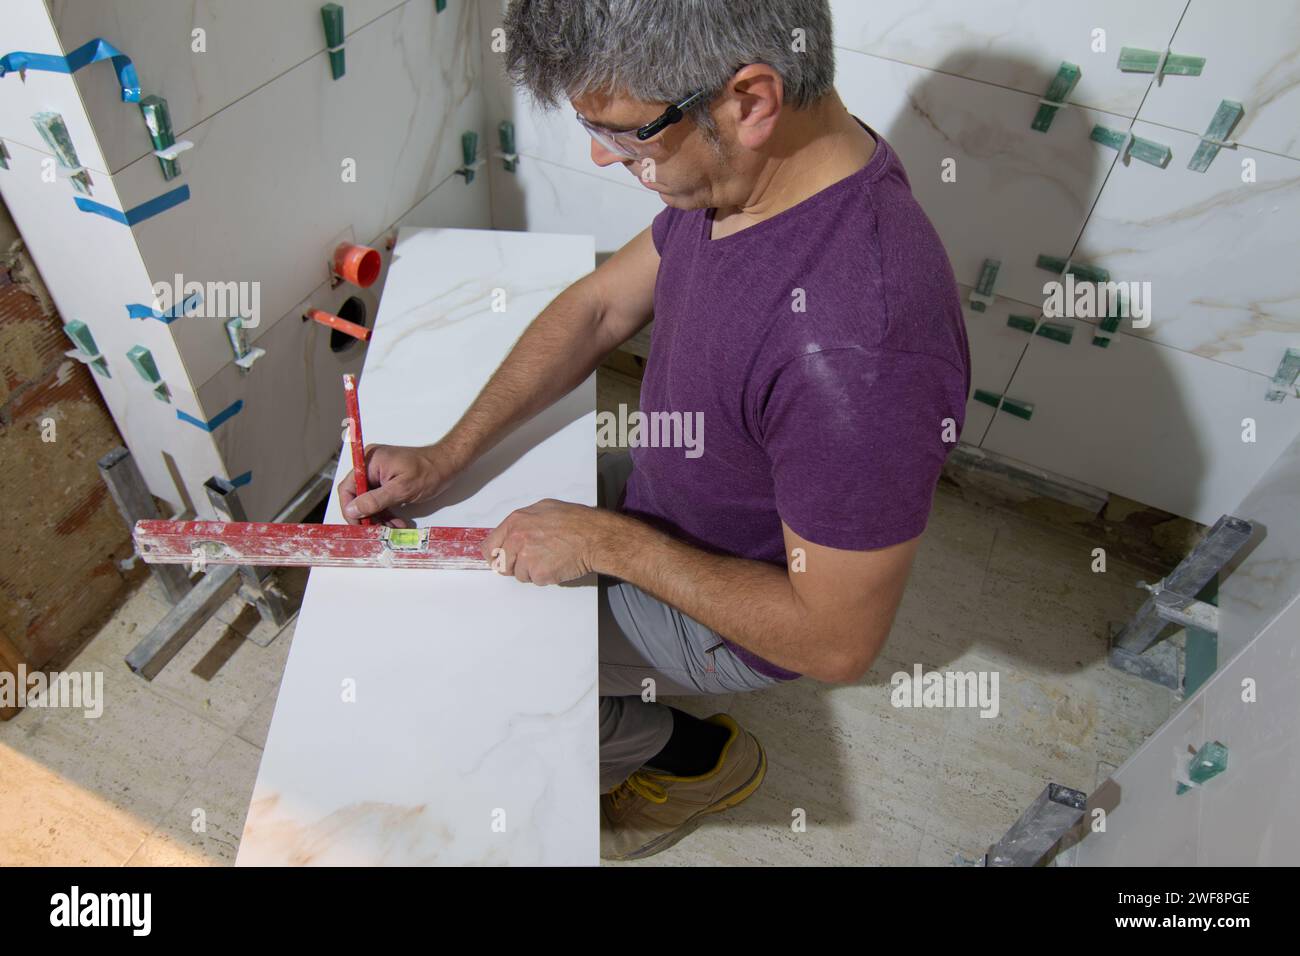 Tuile dans un petit espace mesurant et marquant une tuile pour l'installation d'un mur de tuile dans une rénovation de salle de bains. Concept de rénovation domiciliaire Banque D'Images